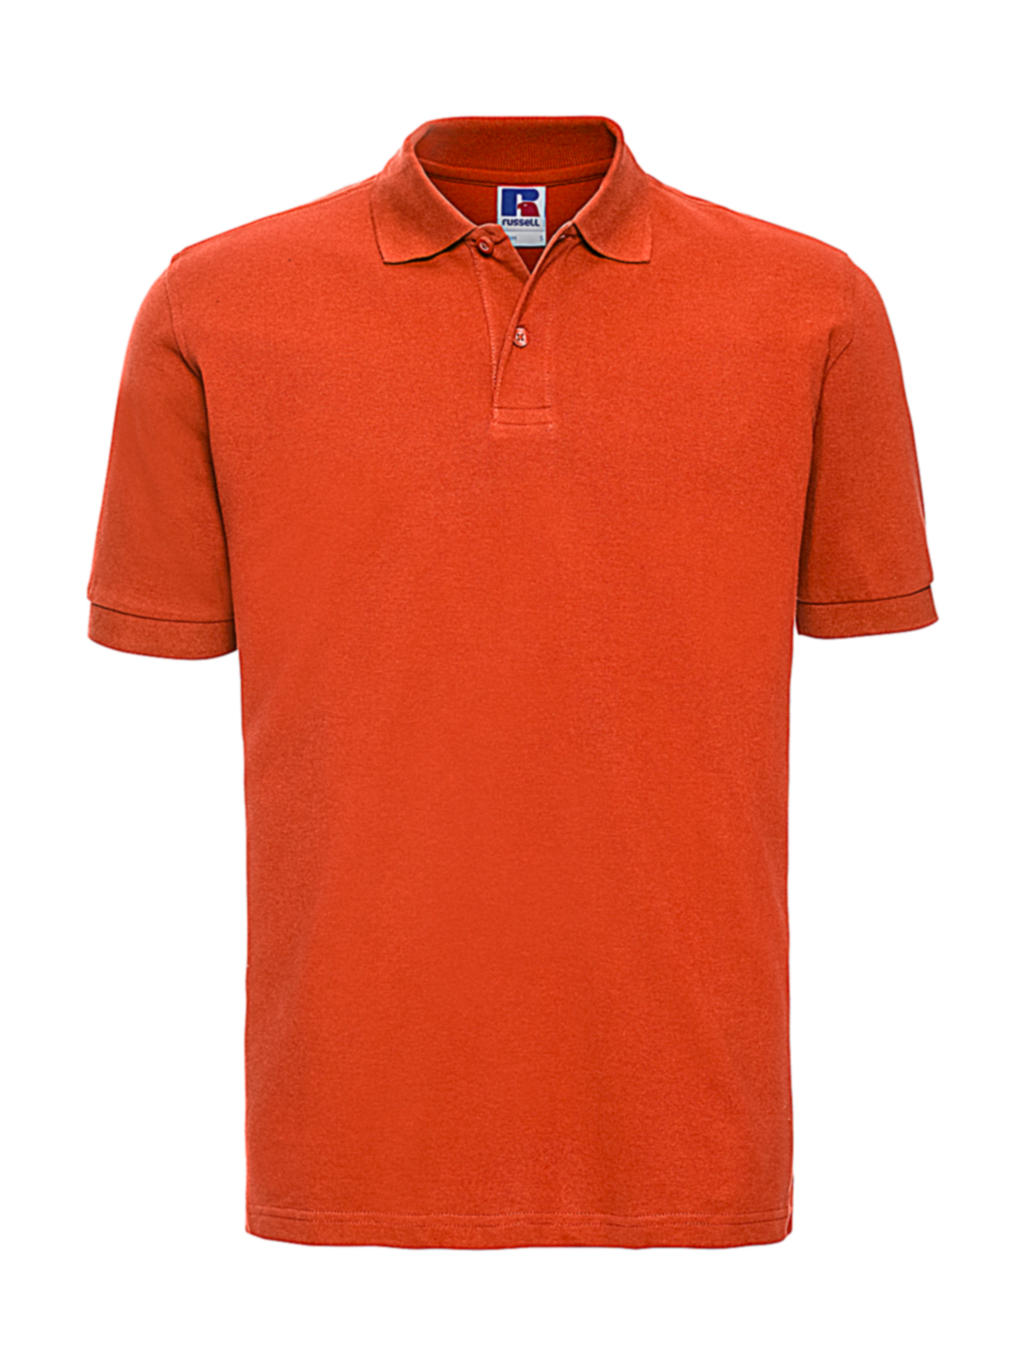  Mens Classic Cotton Polo in Farbe Orange